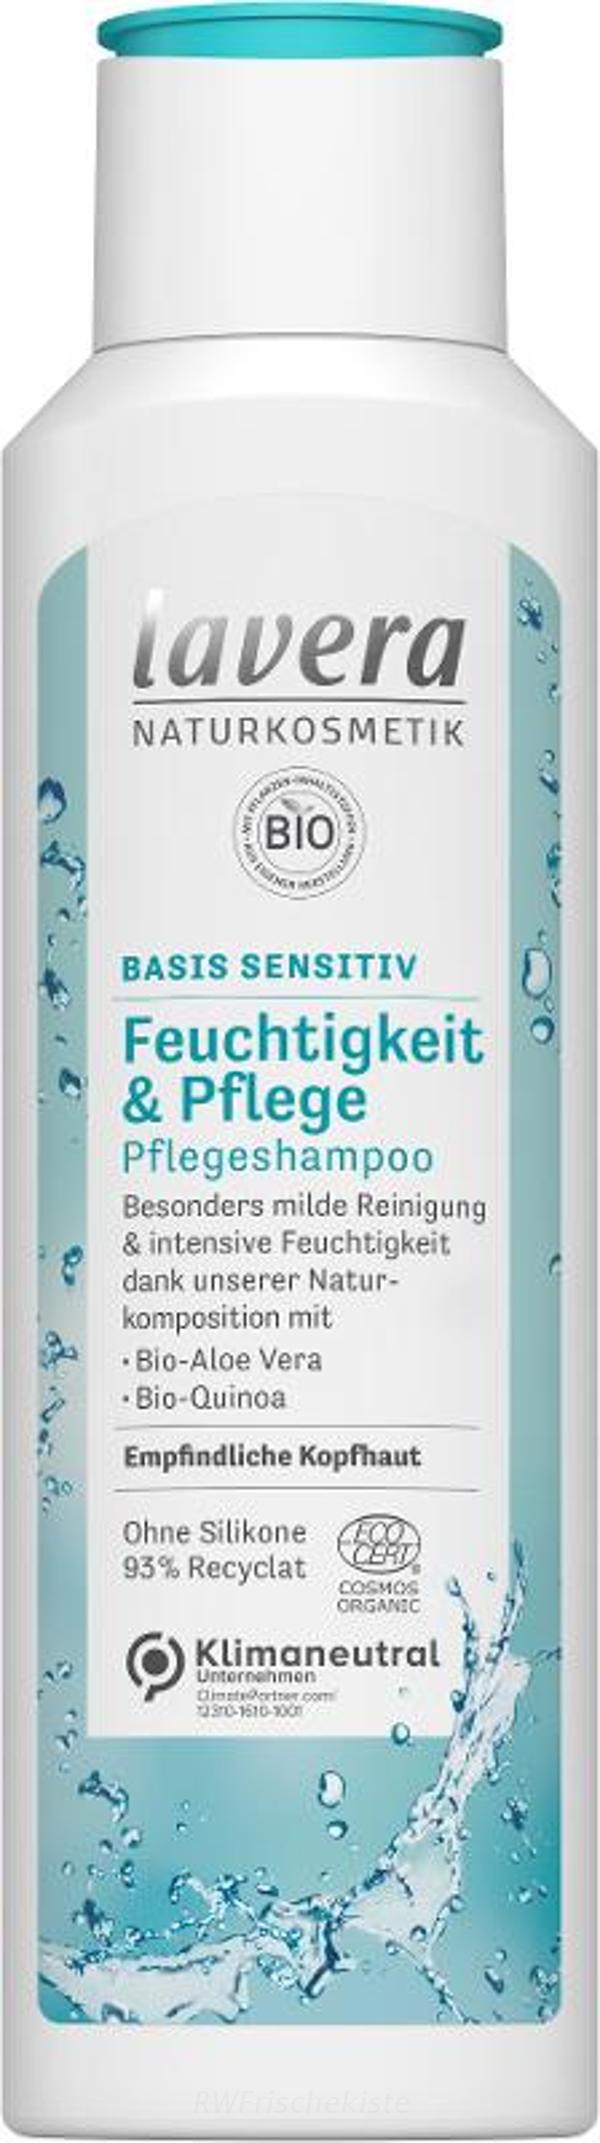 Produktfoto zu BS Feuchtigkeits Shampoo